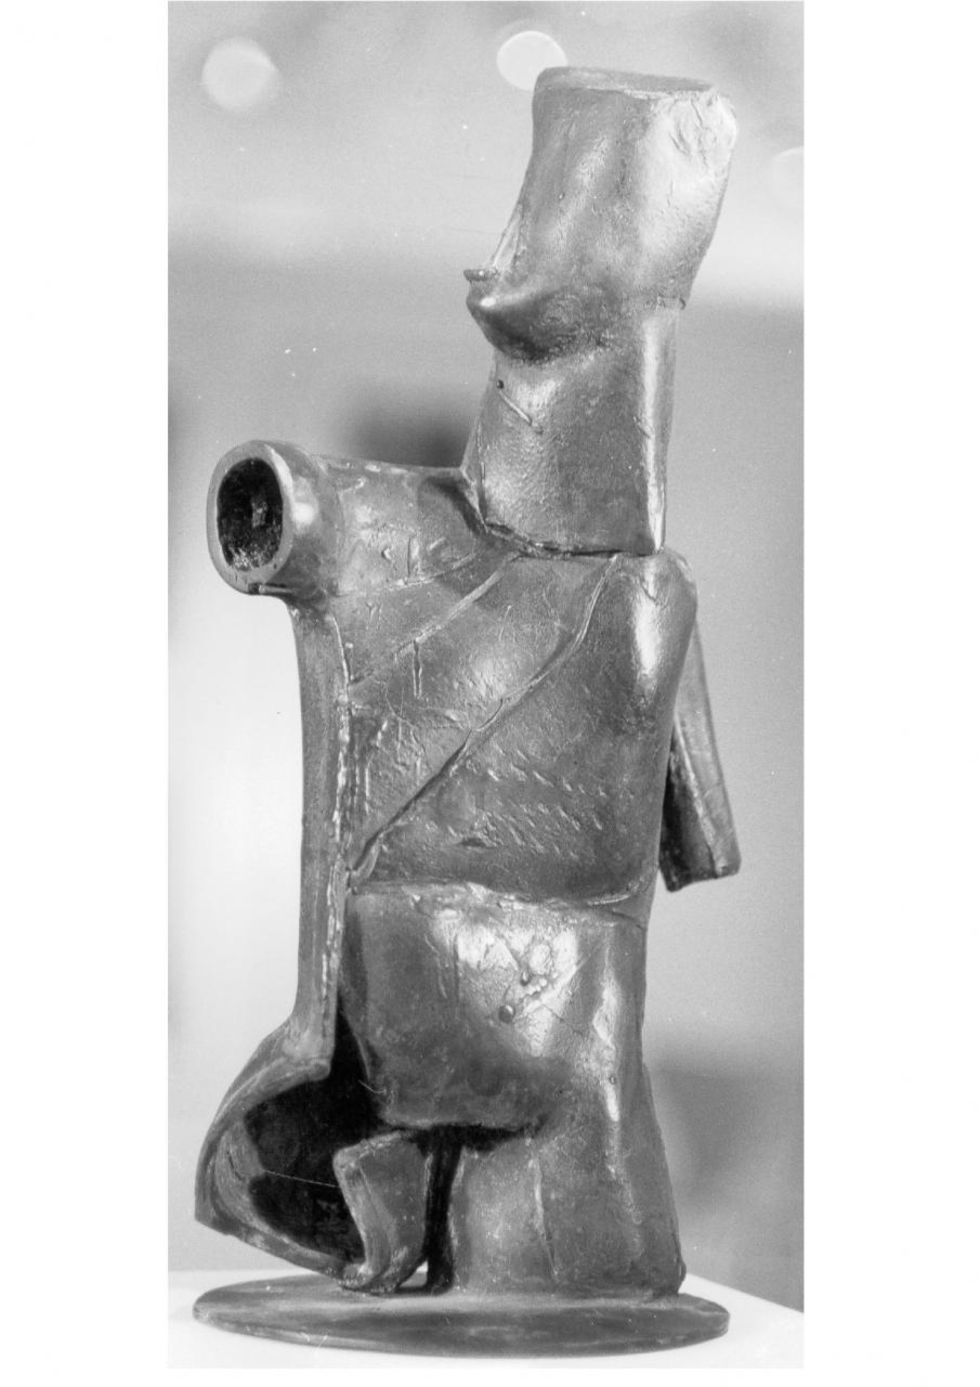 Reinhard Buch - Little Warrior, 1981,2014, bronze, HLB 42x21x19cm